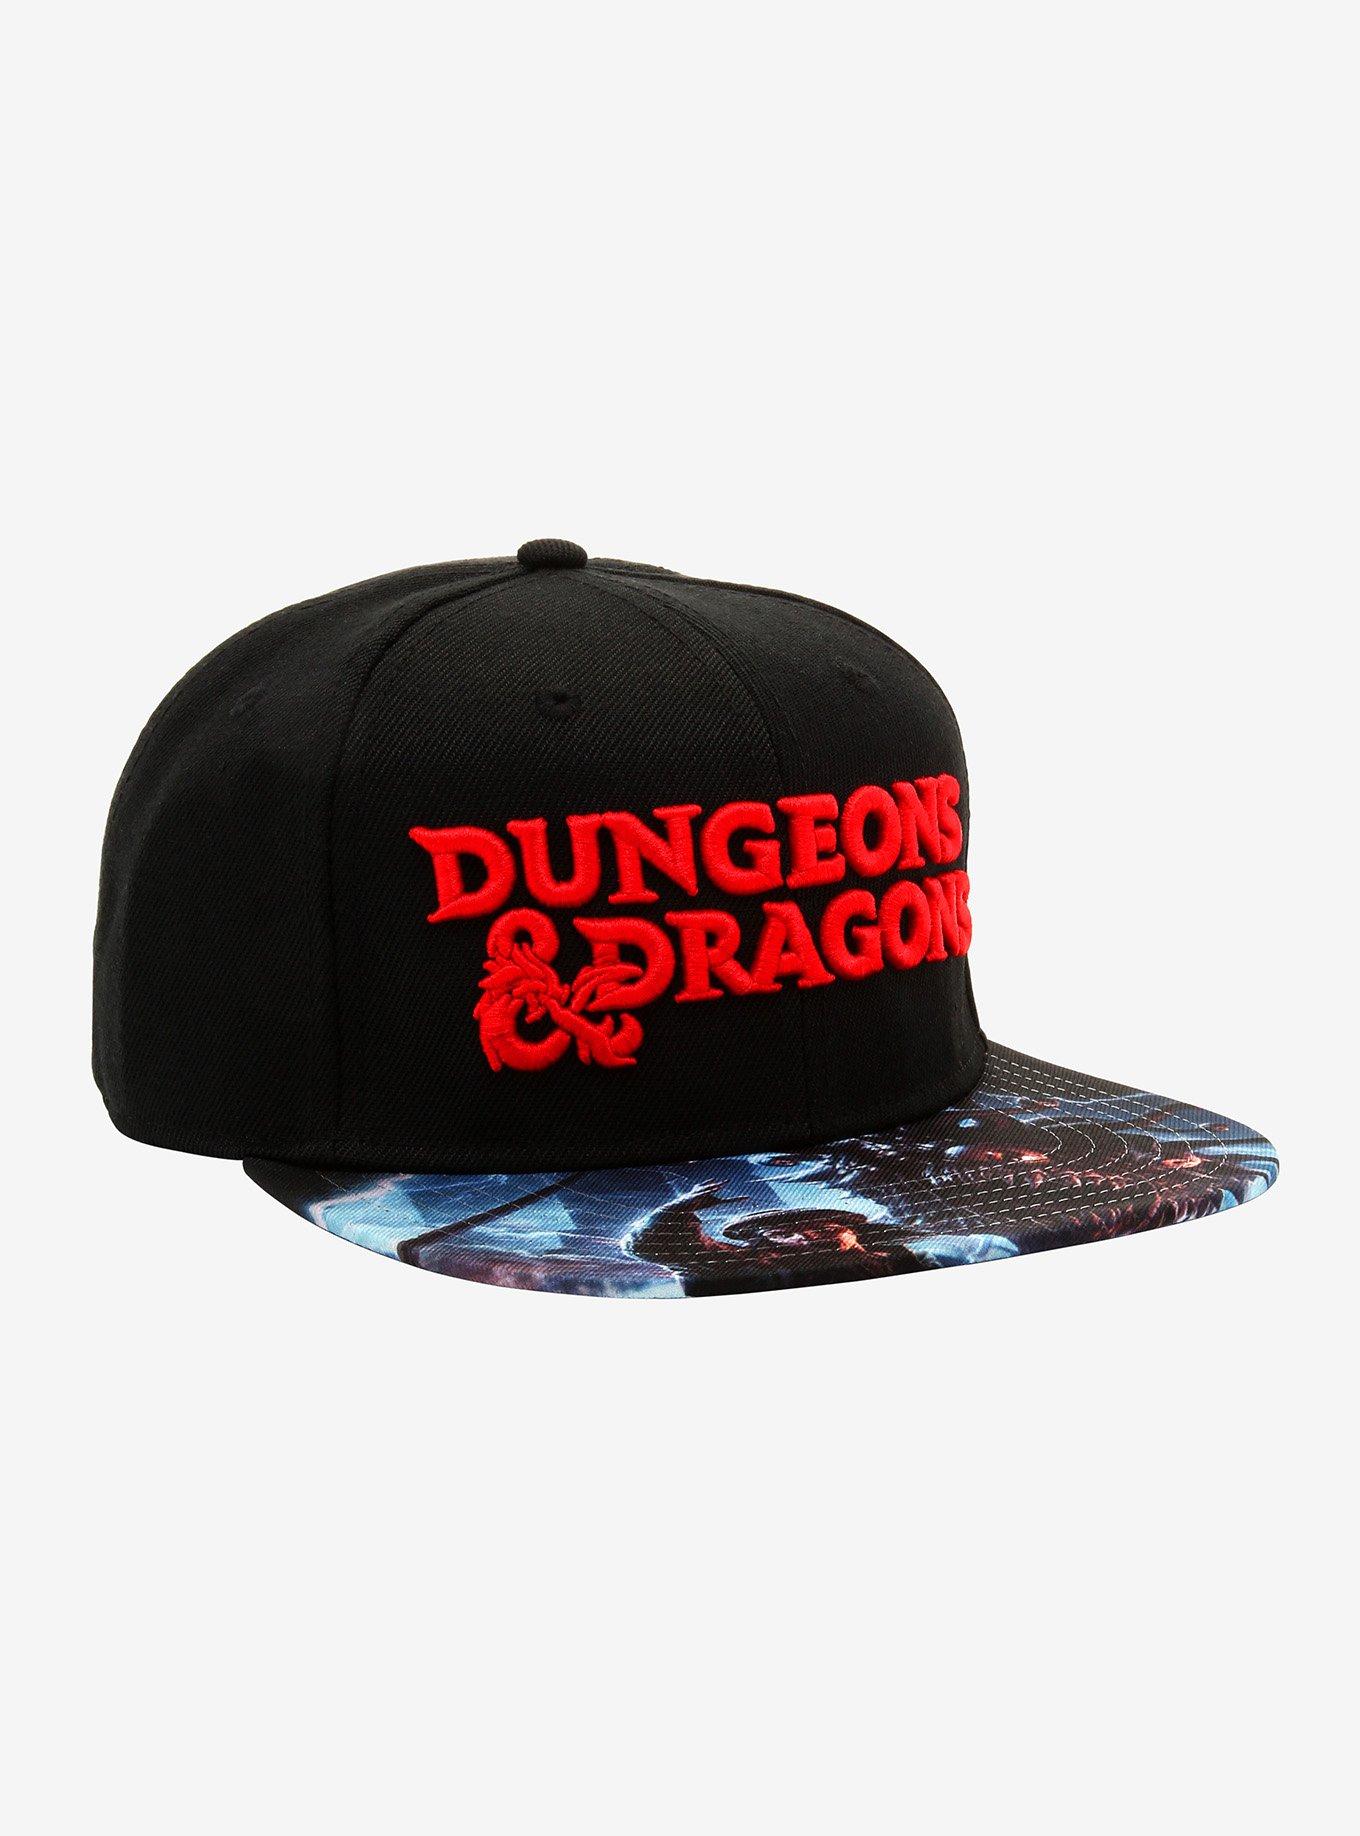 Dungeons & Dragons Beholder Art Snapback Hat, , hi-res